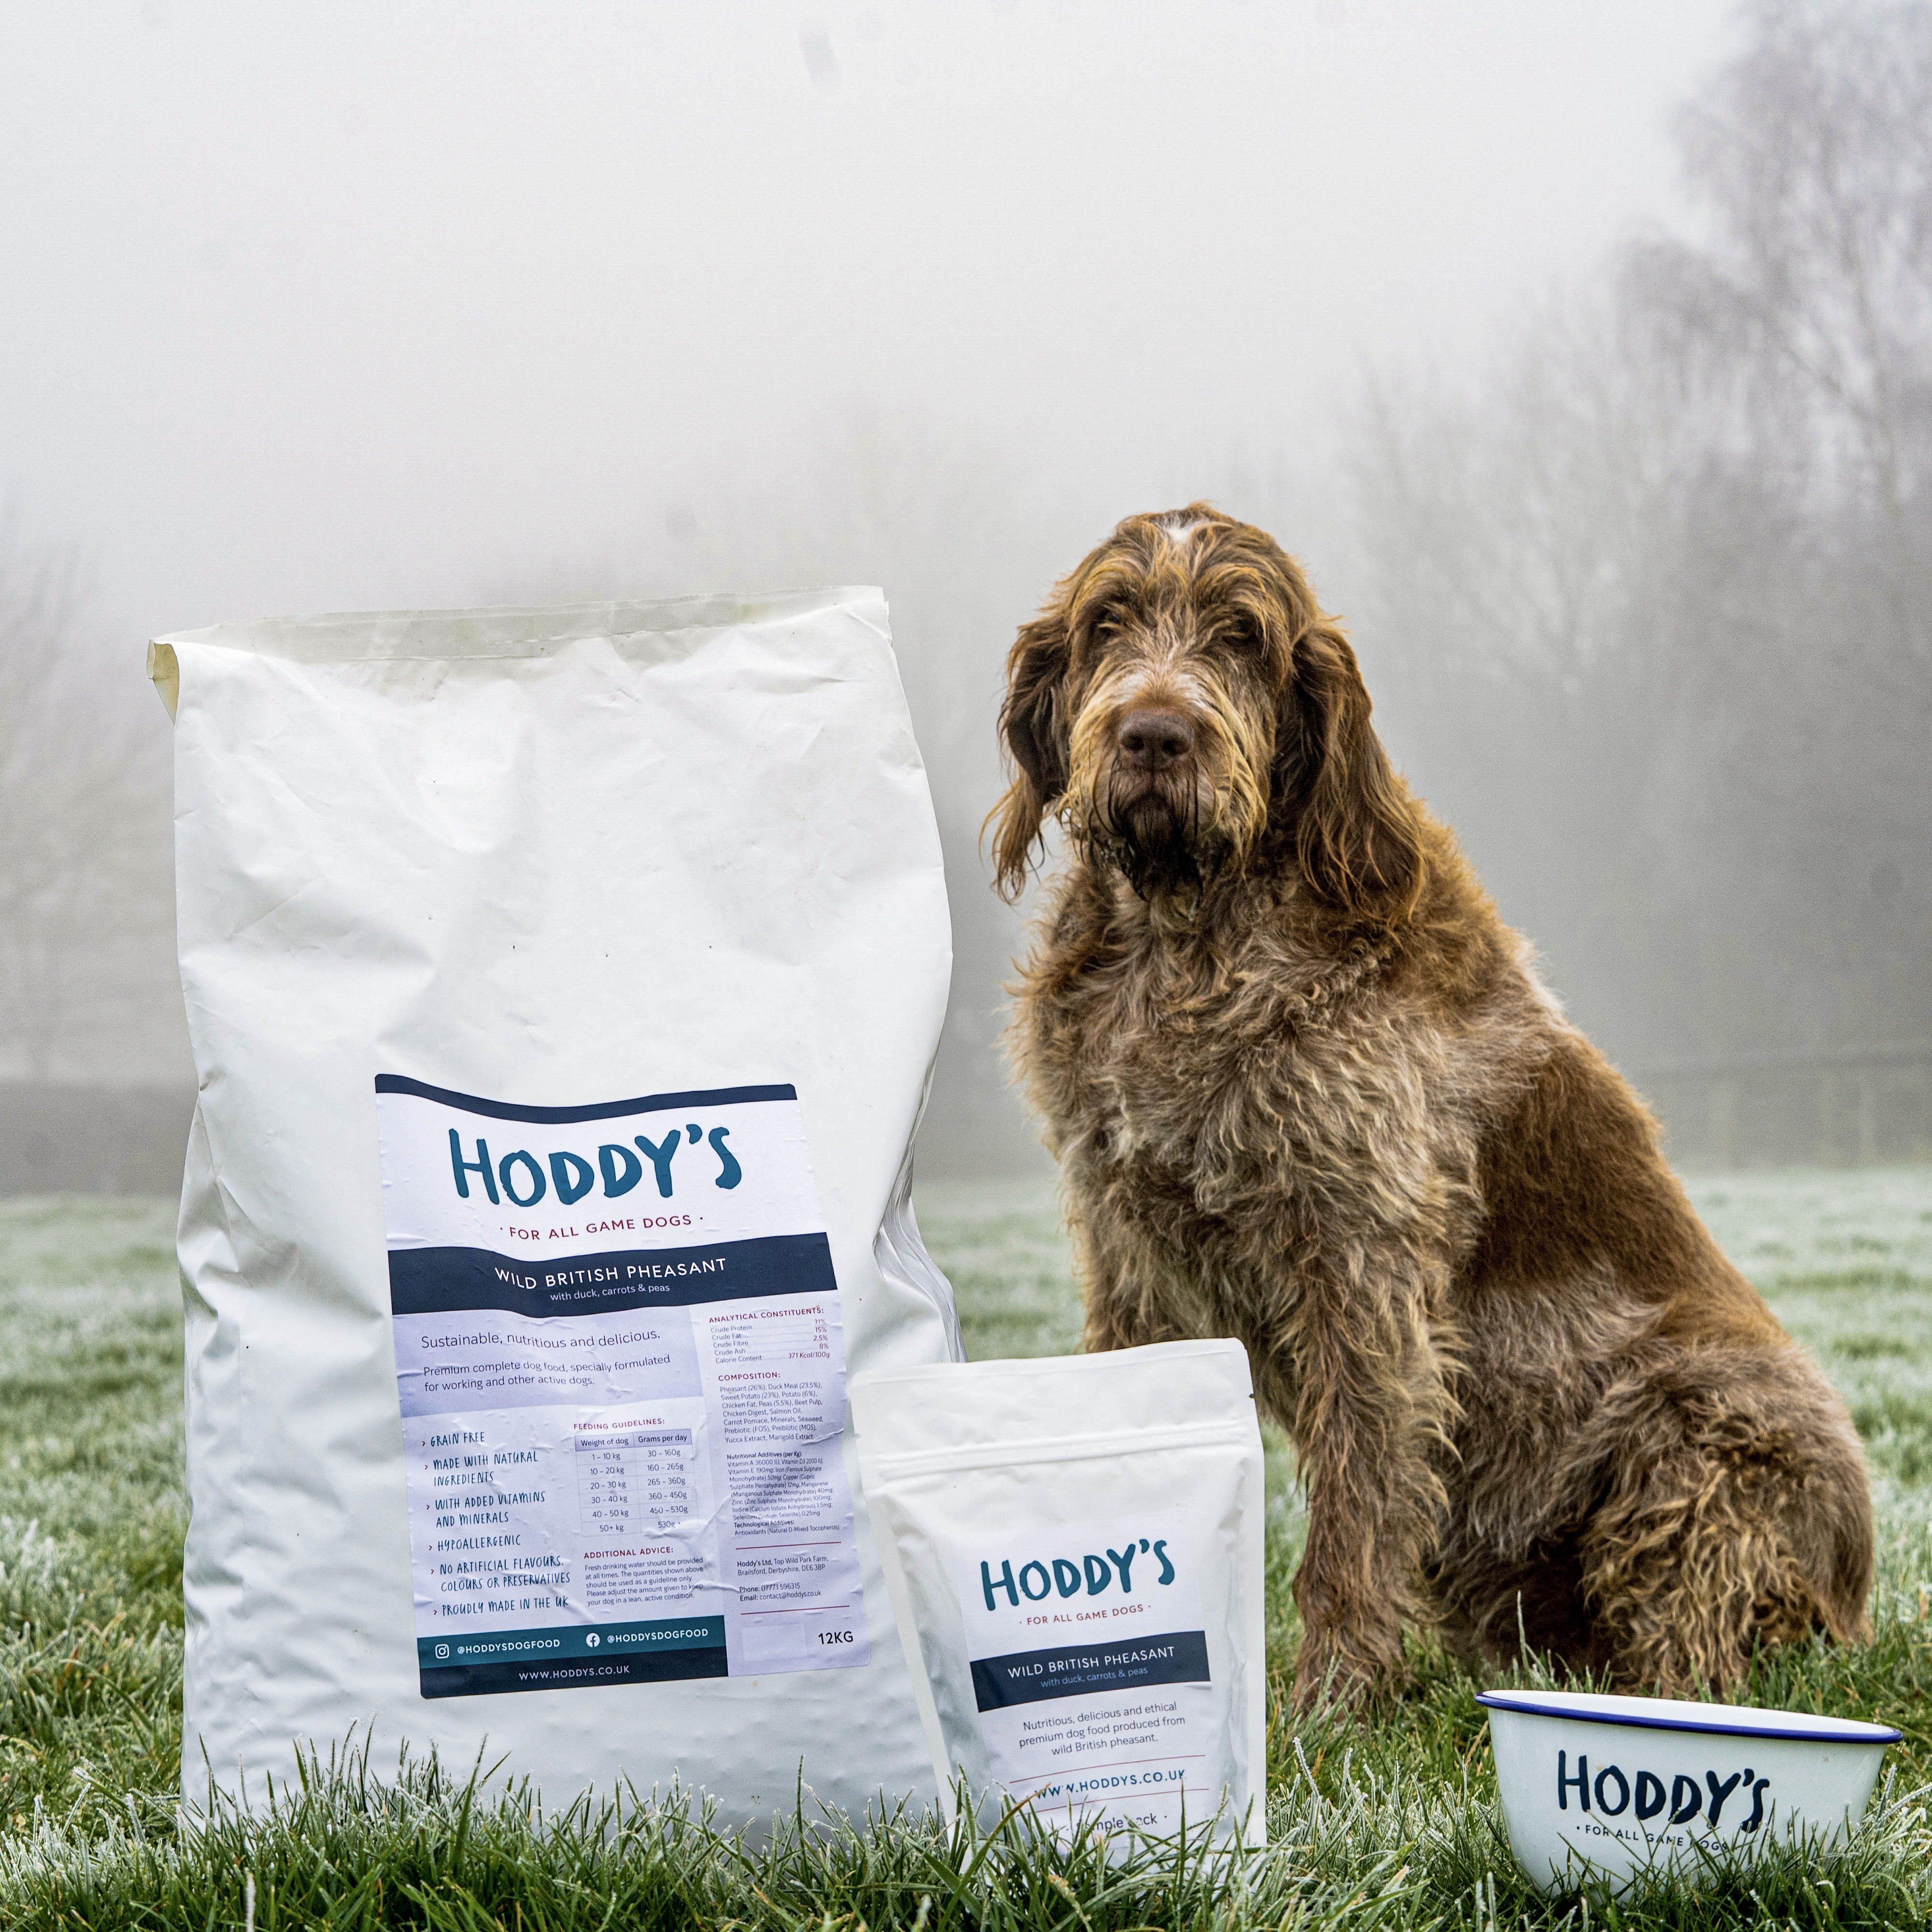 Hoddy's Wild British Venison - Free Trial - Premium Free trial from Hoddy's Premium Dog Food - Just £0! Shop now at Hoddy's Premium Dog Food